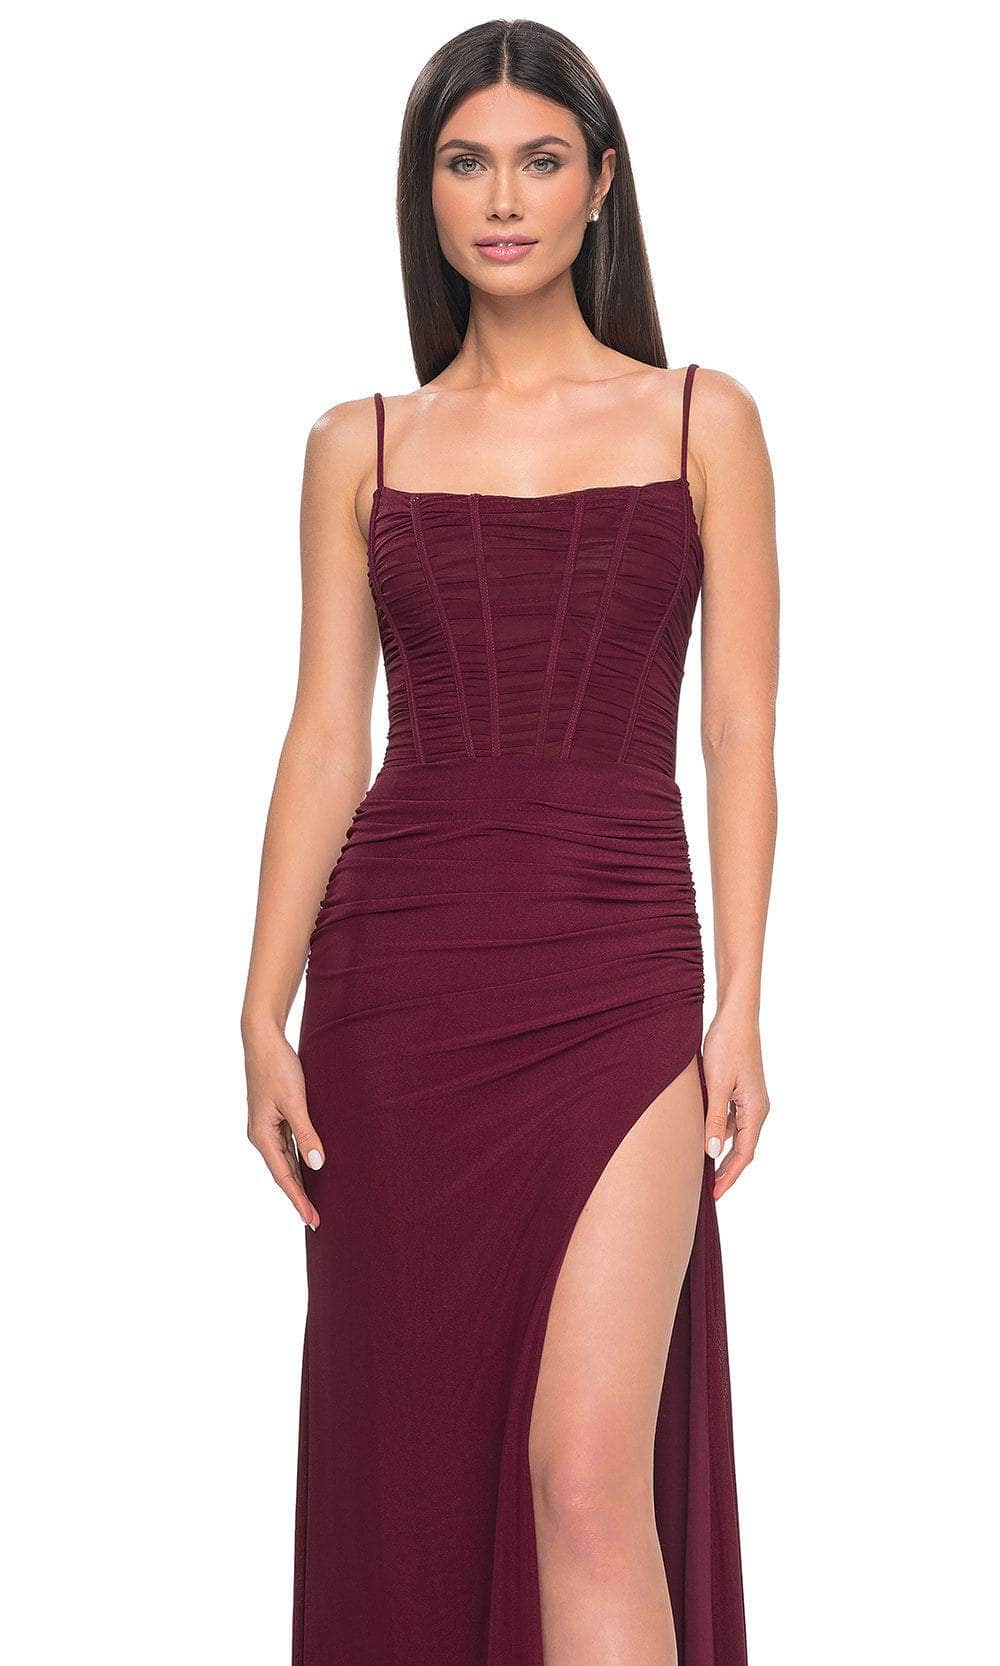 La Femme 32161 - Spaghetti Strap Corset Prom Dress Special Occasion Dresses